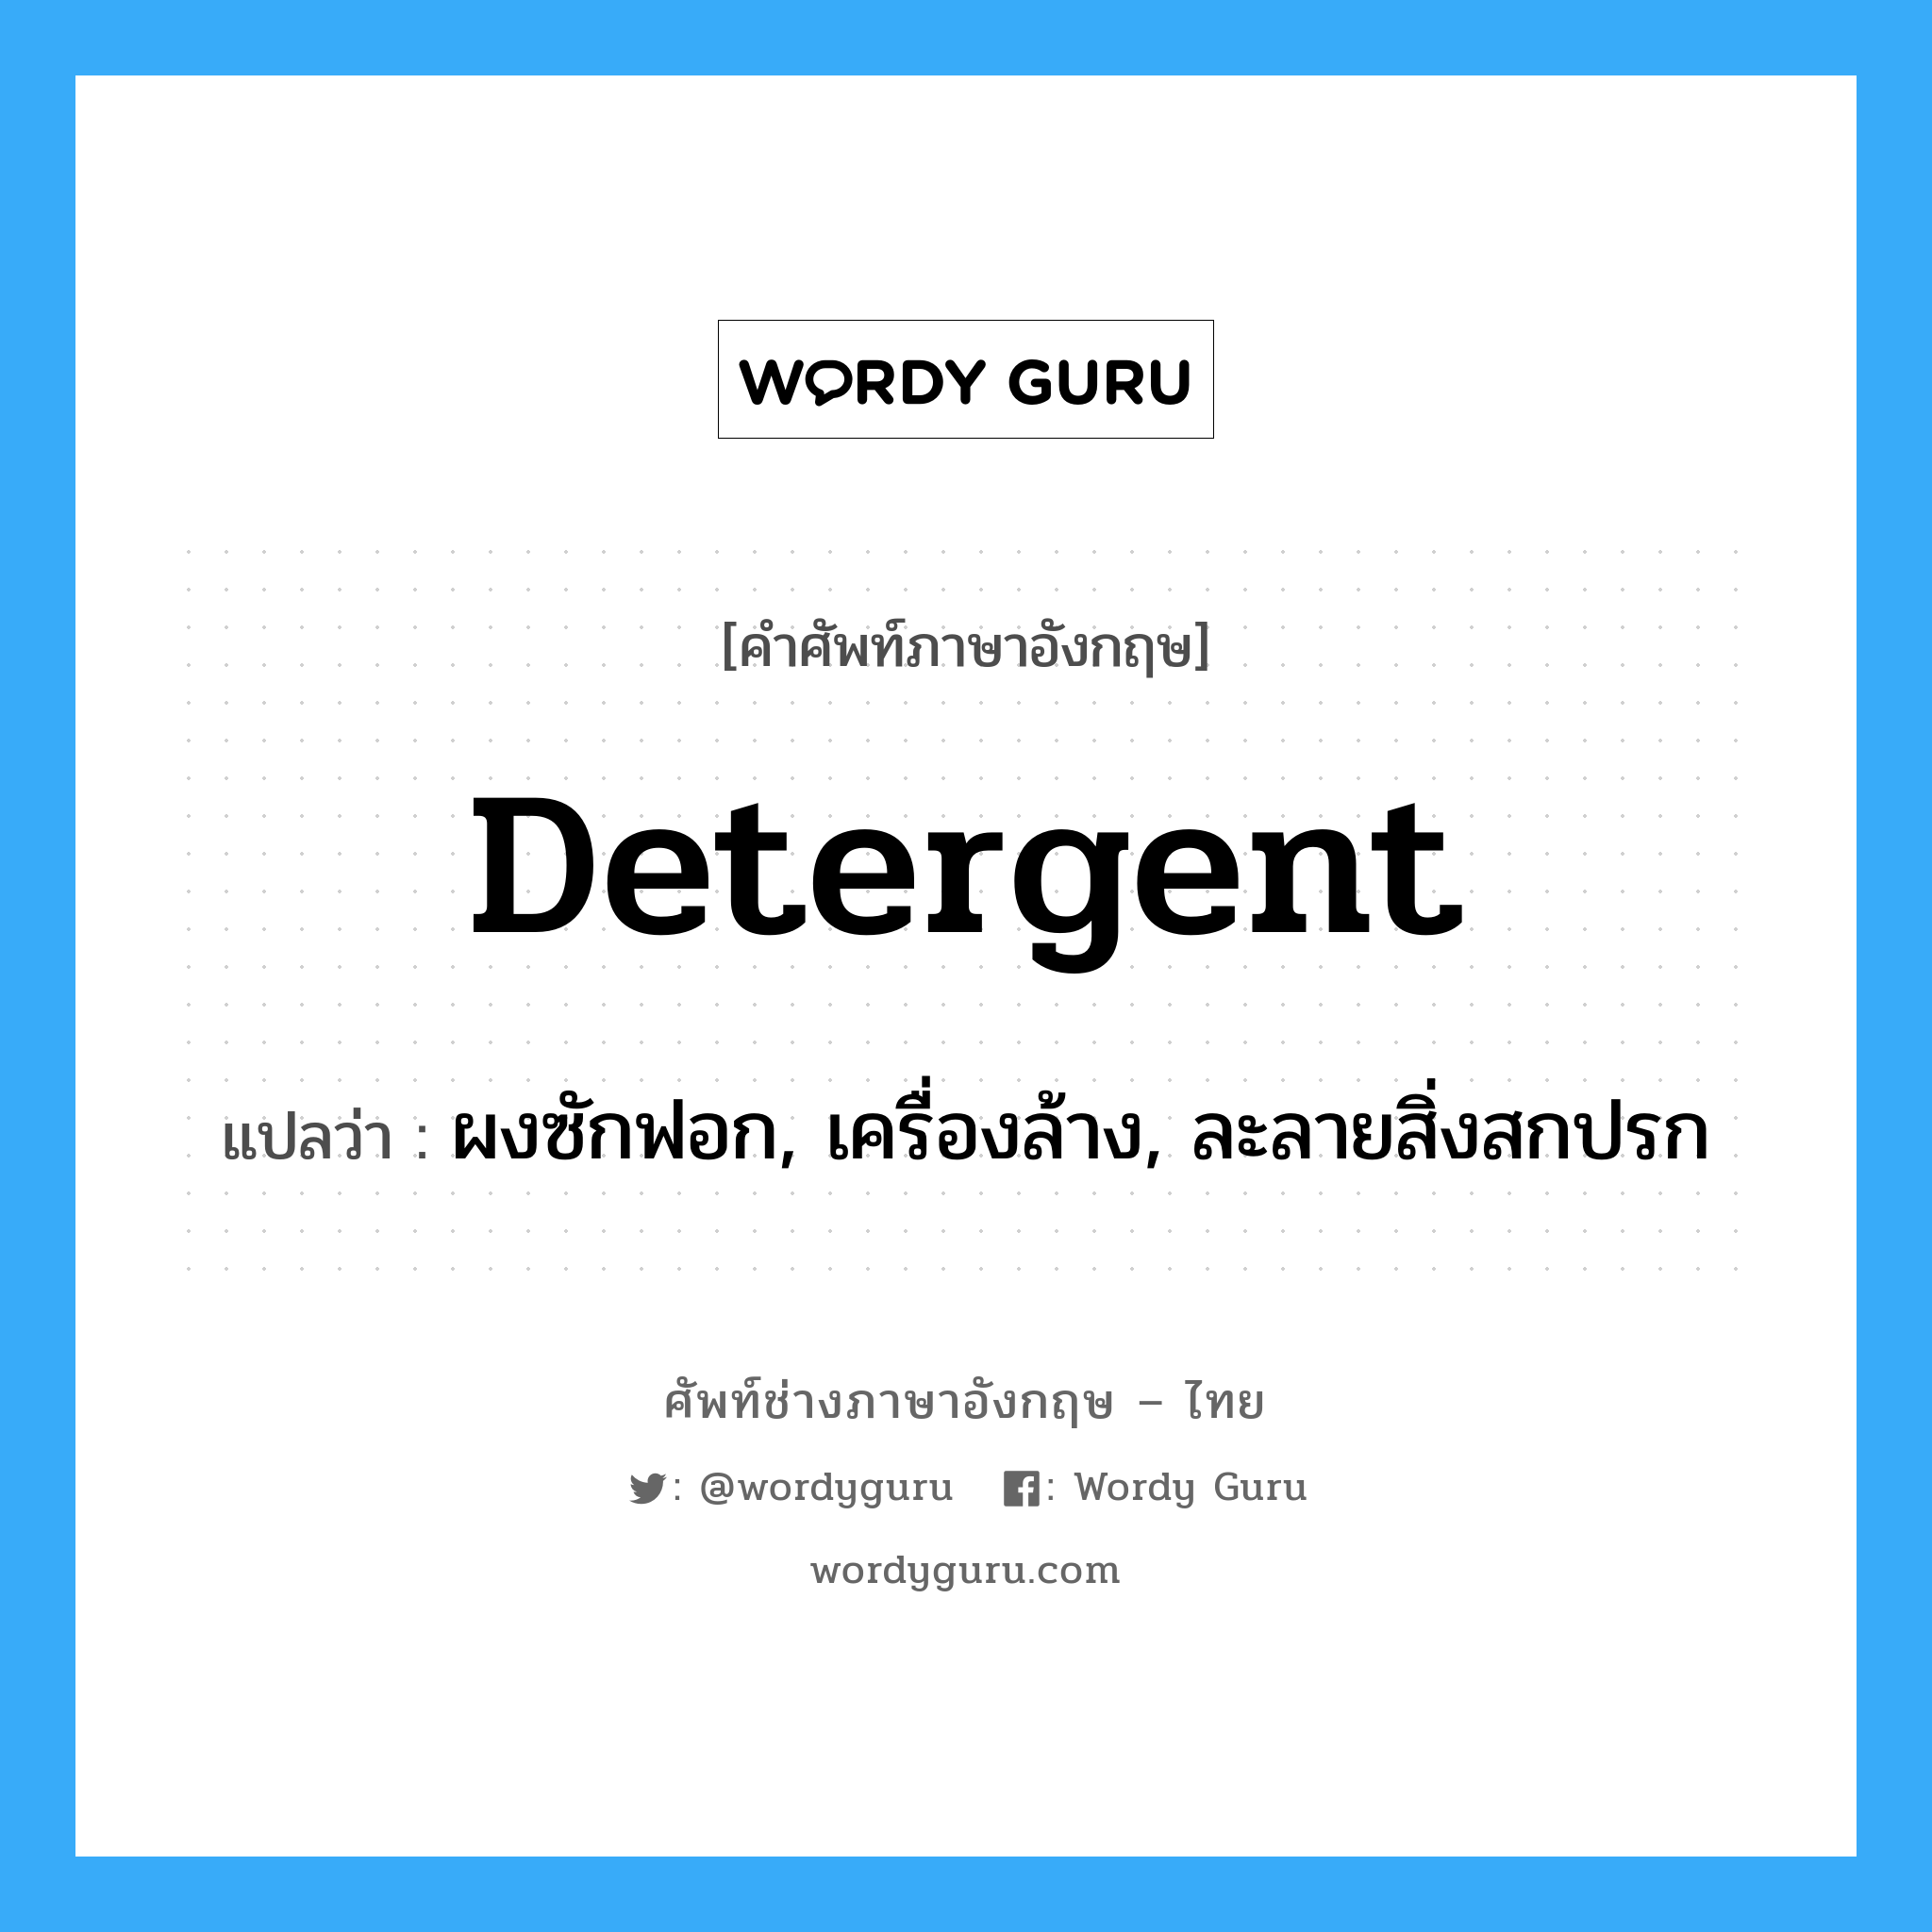 detergent แปลว่า?, คำศัพท์ช่างภาษาอังกฤษ - ไทย detergent คำศัพท์ภาษาอังกฤษ detergent แปลว่า ผงซักฟอก, เครื่องล้าง, ละลายสิ่งสกปรก